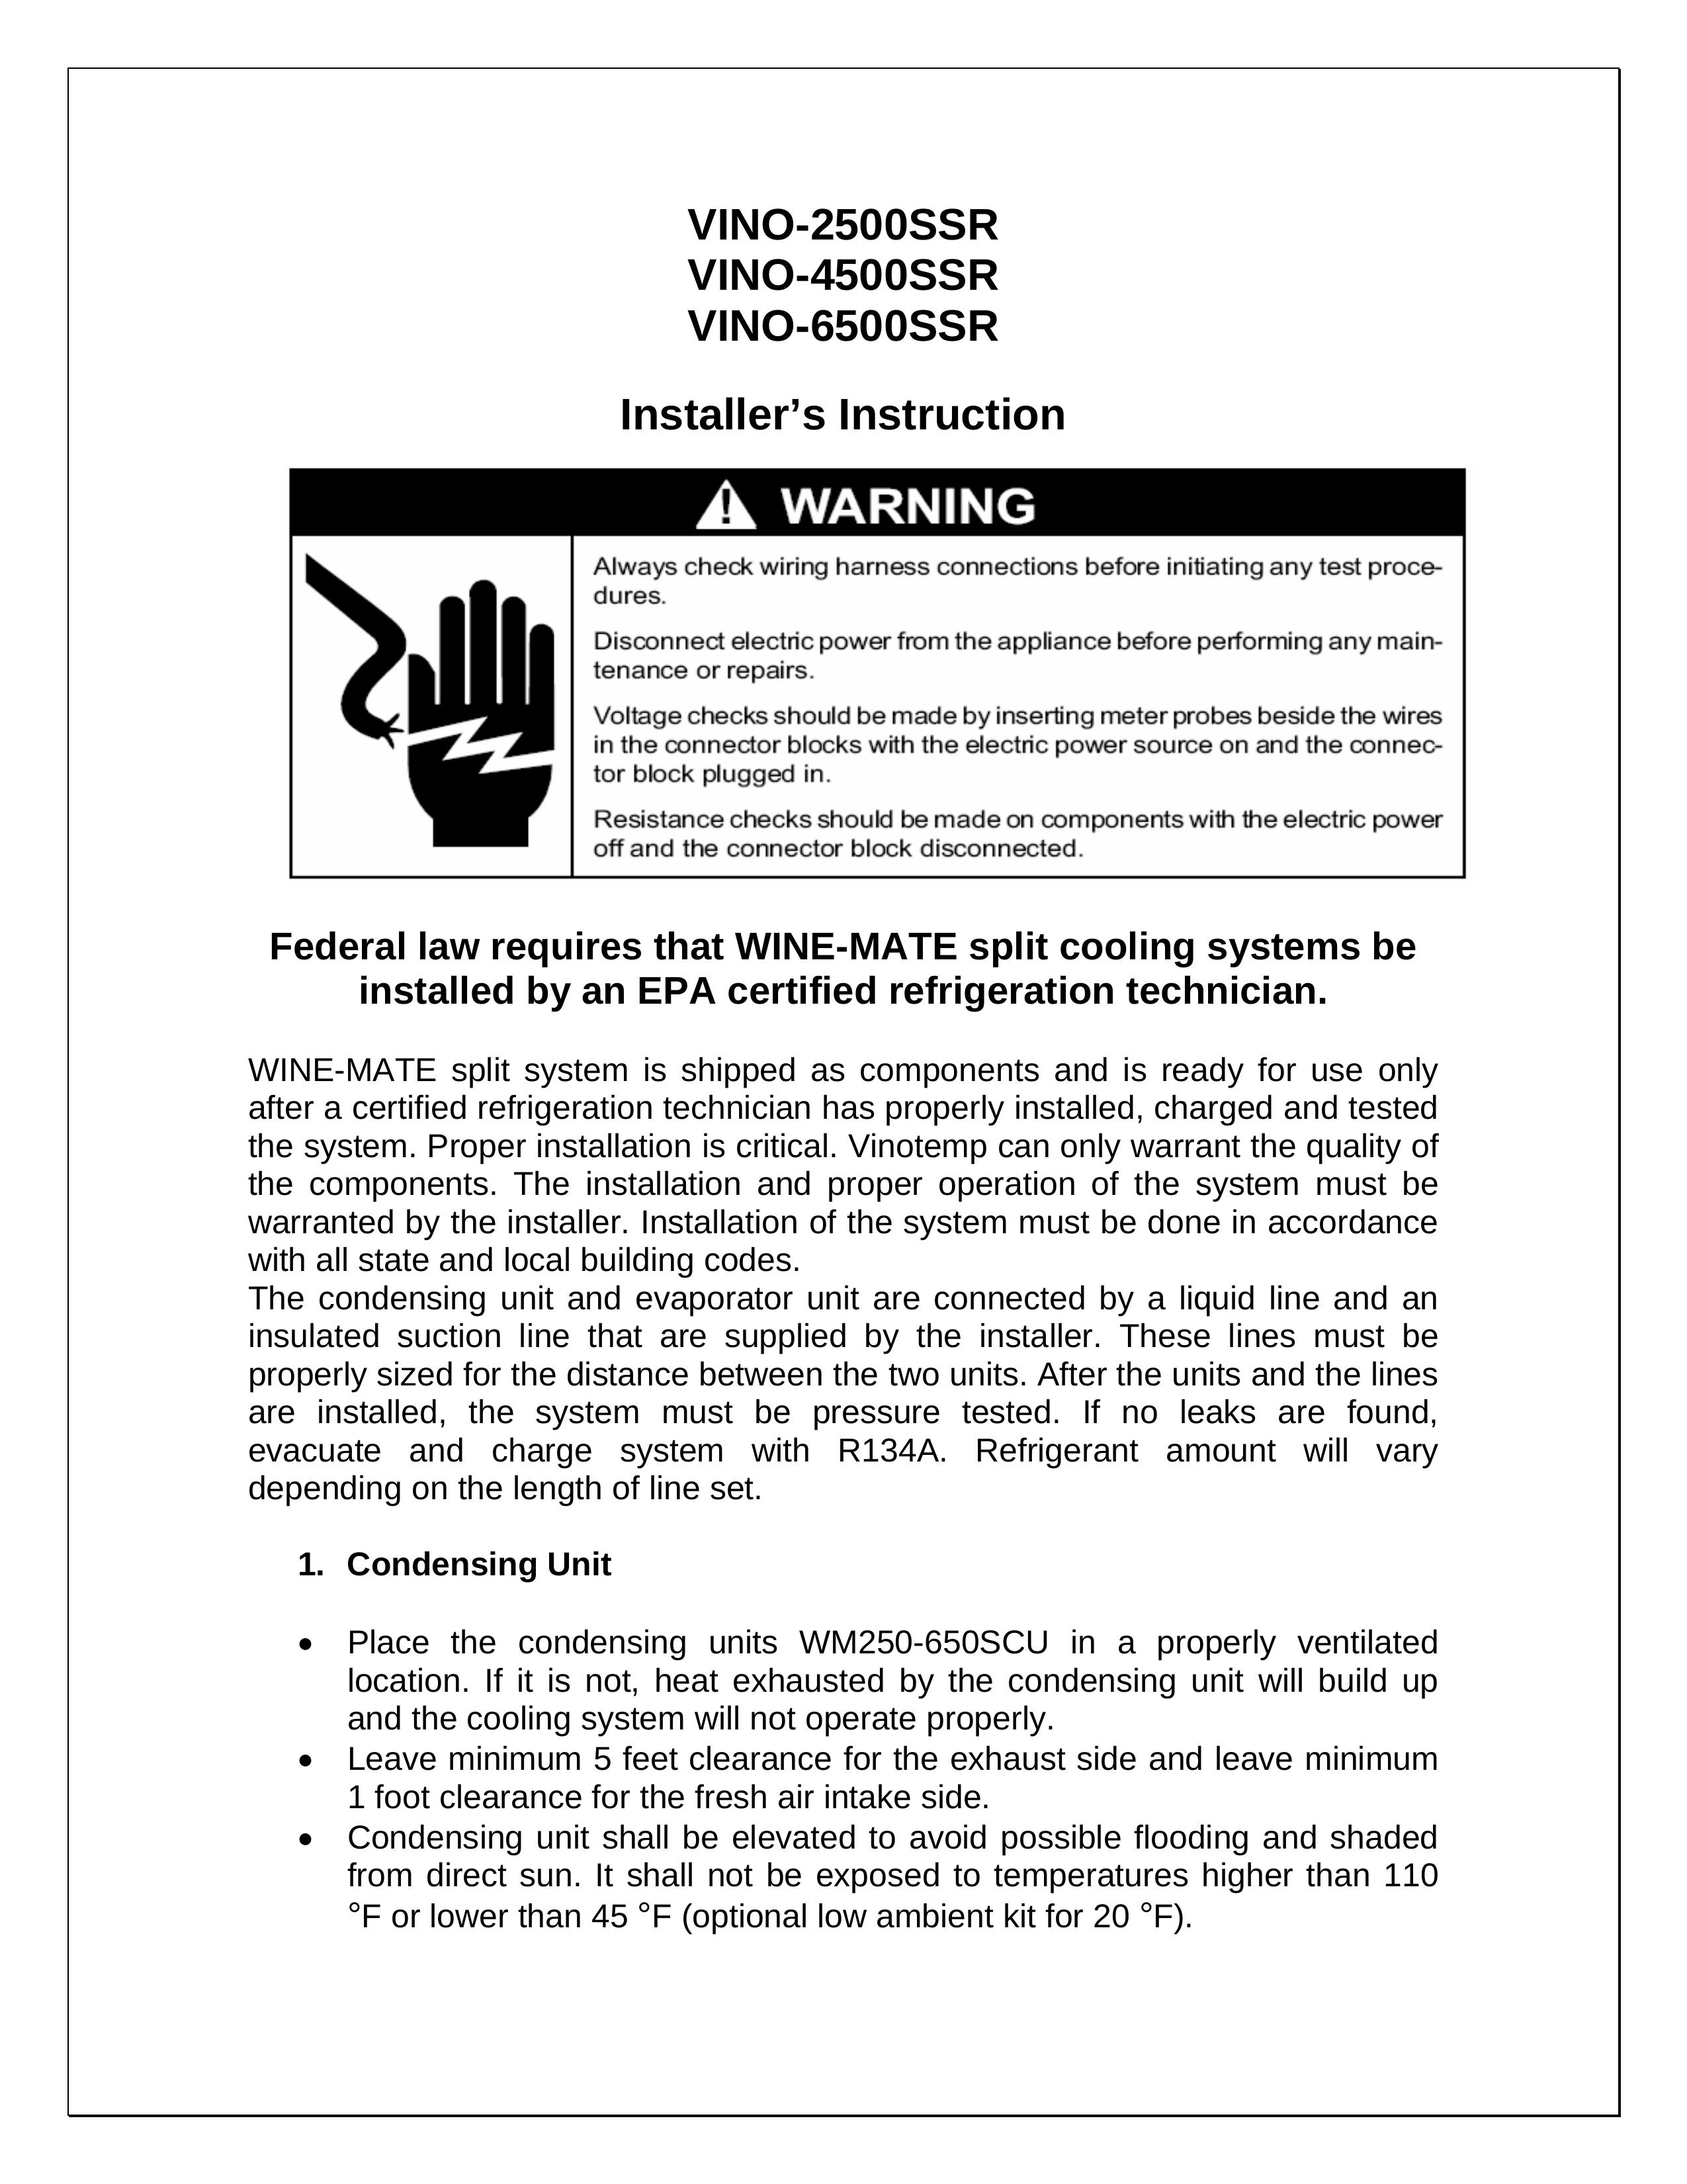 Vinotemp VINO-2500SSR Refrigerator User Manual